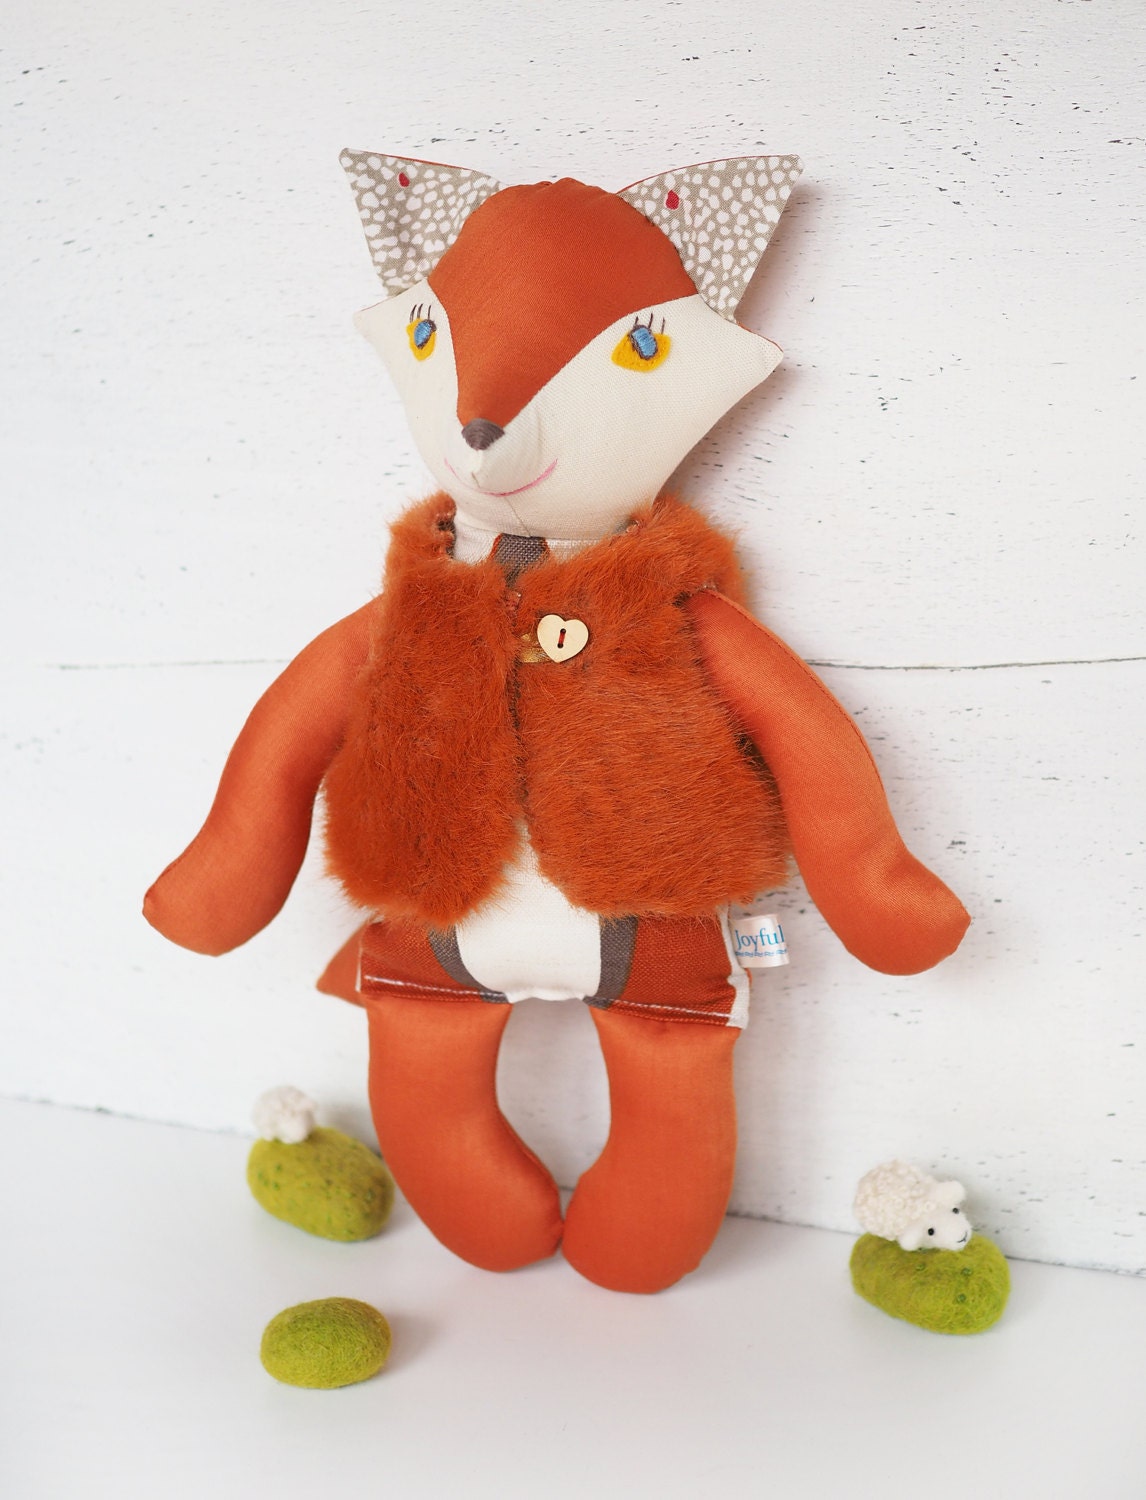 Stuffed toy Joyful Fox in furry vest in retro style by JoyfulRiver